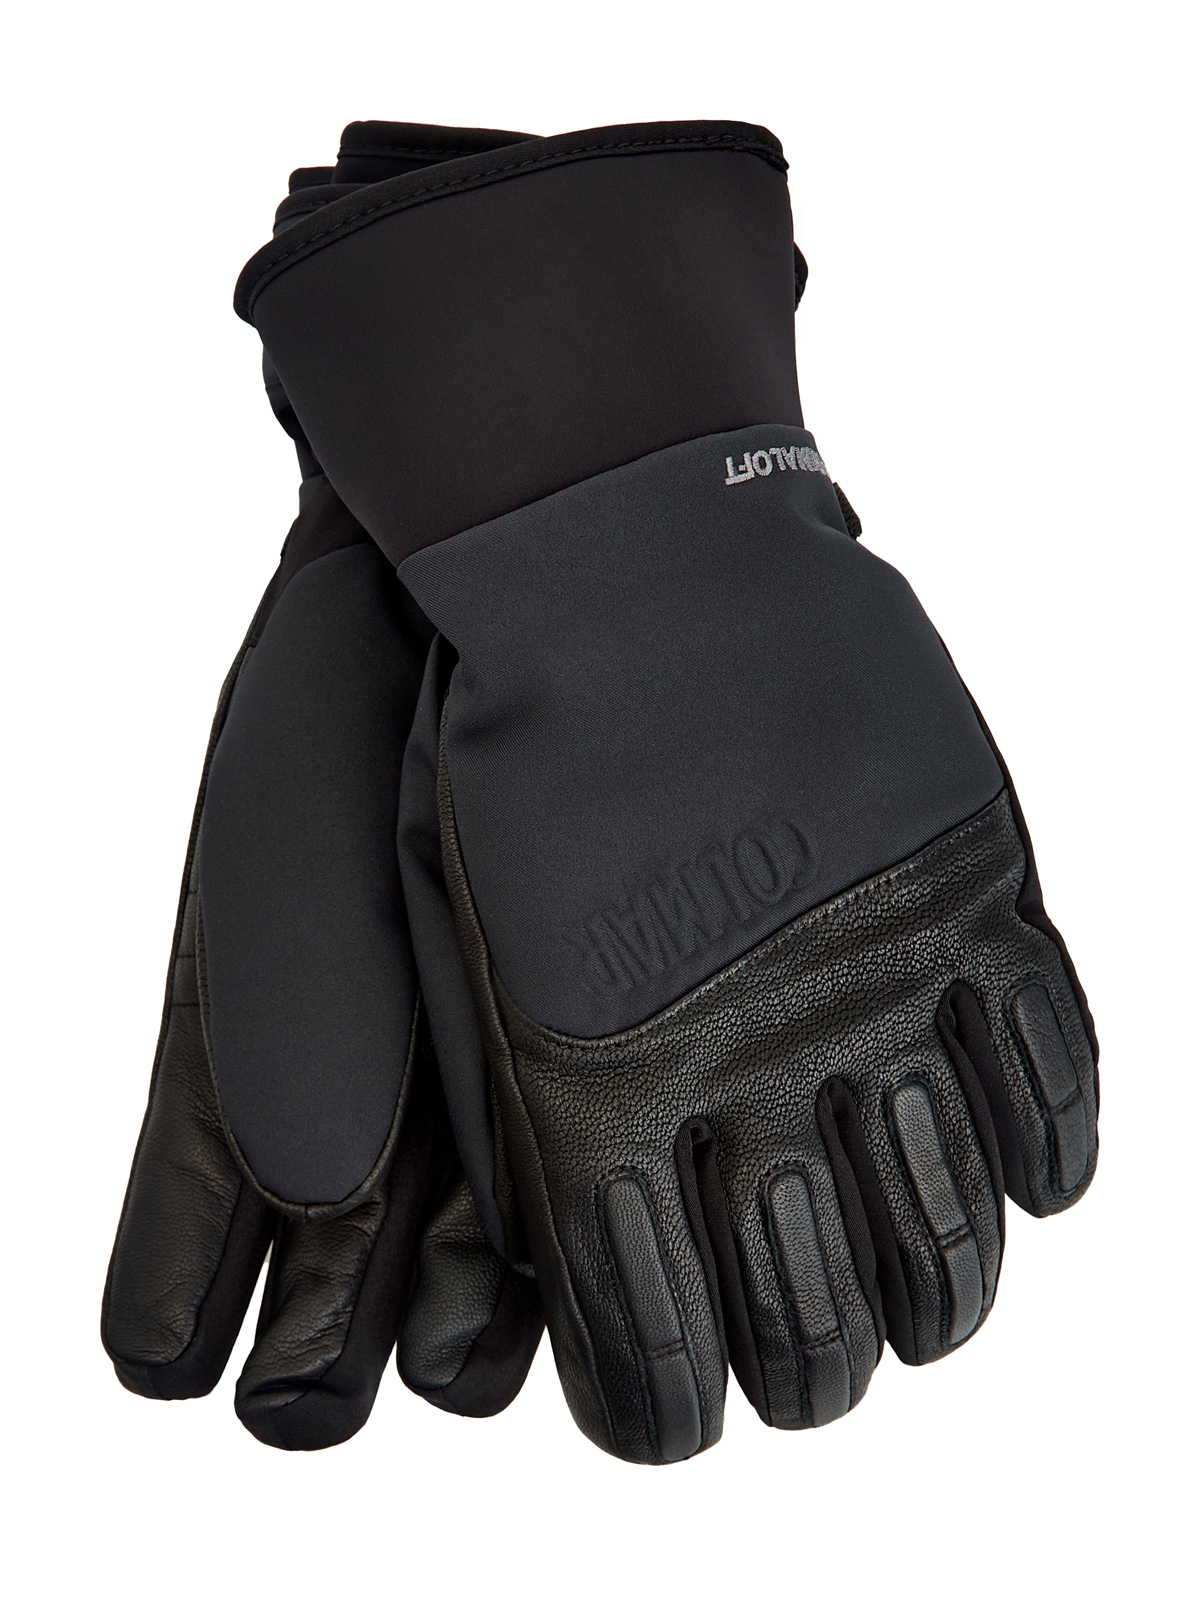 Горнолыжные перчатки из кожи и мембраны с подкладкой PrimaLoft® COLMAR, цвет черный, размер L;XL